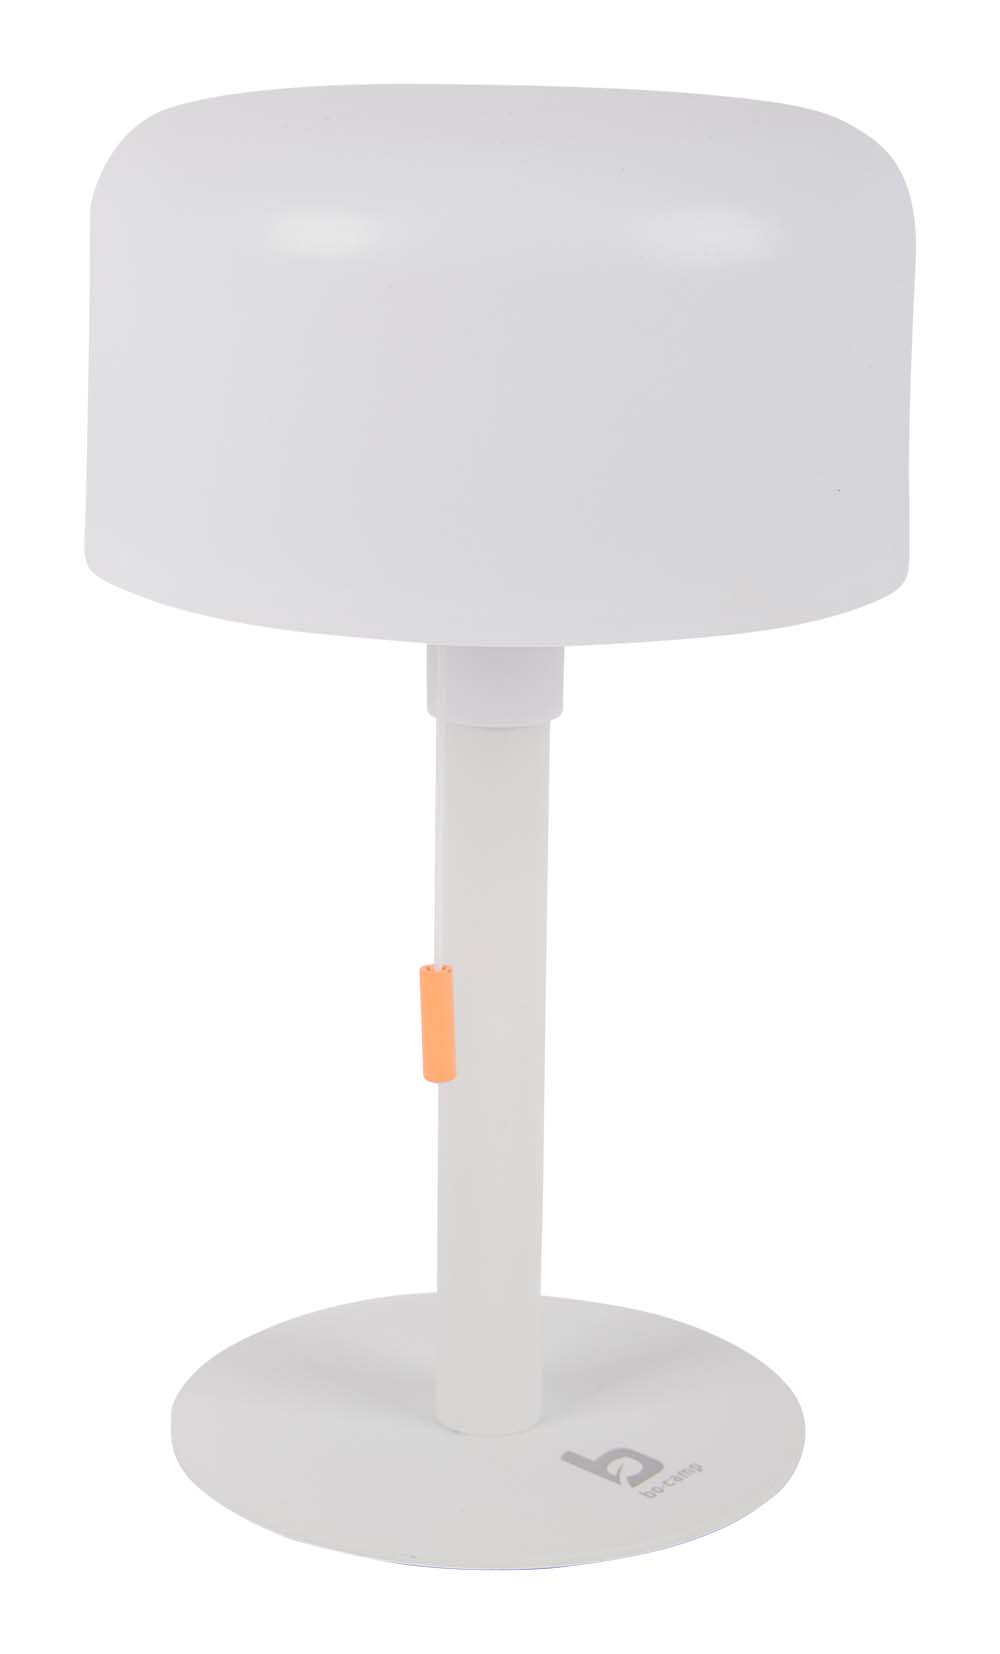 5818619 Een sfeervolle tafellamp uit de Pastel collectie. Geeft een prettig licht door de warme witte LED verlichting met 3 lichtstanden (25/50/100%). De ingebouwde Li-ion accu kan worden opgeladen met een meegeleverde USB kabel. Ideaal voor op een tafel of kastje.